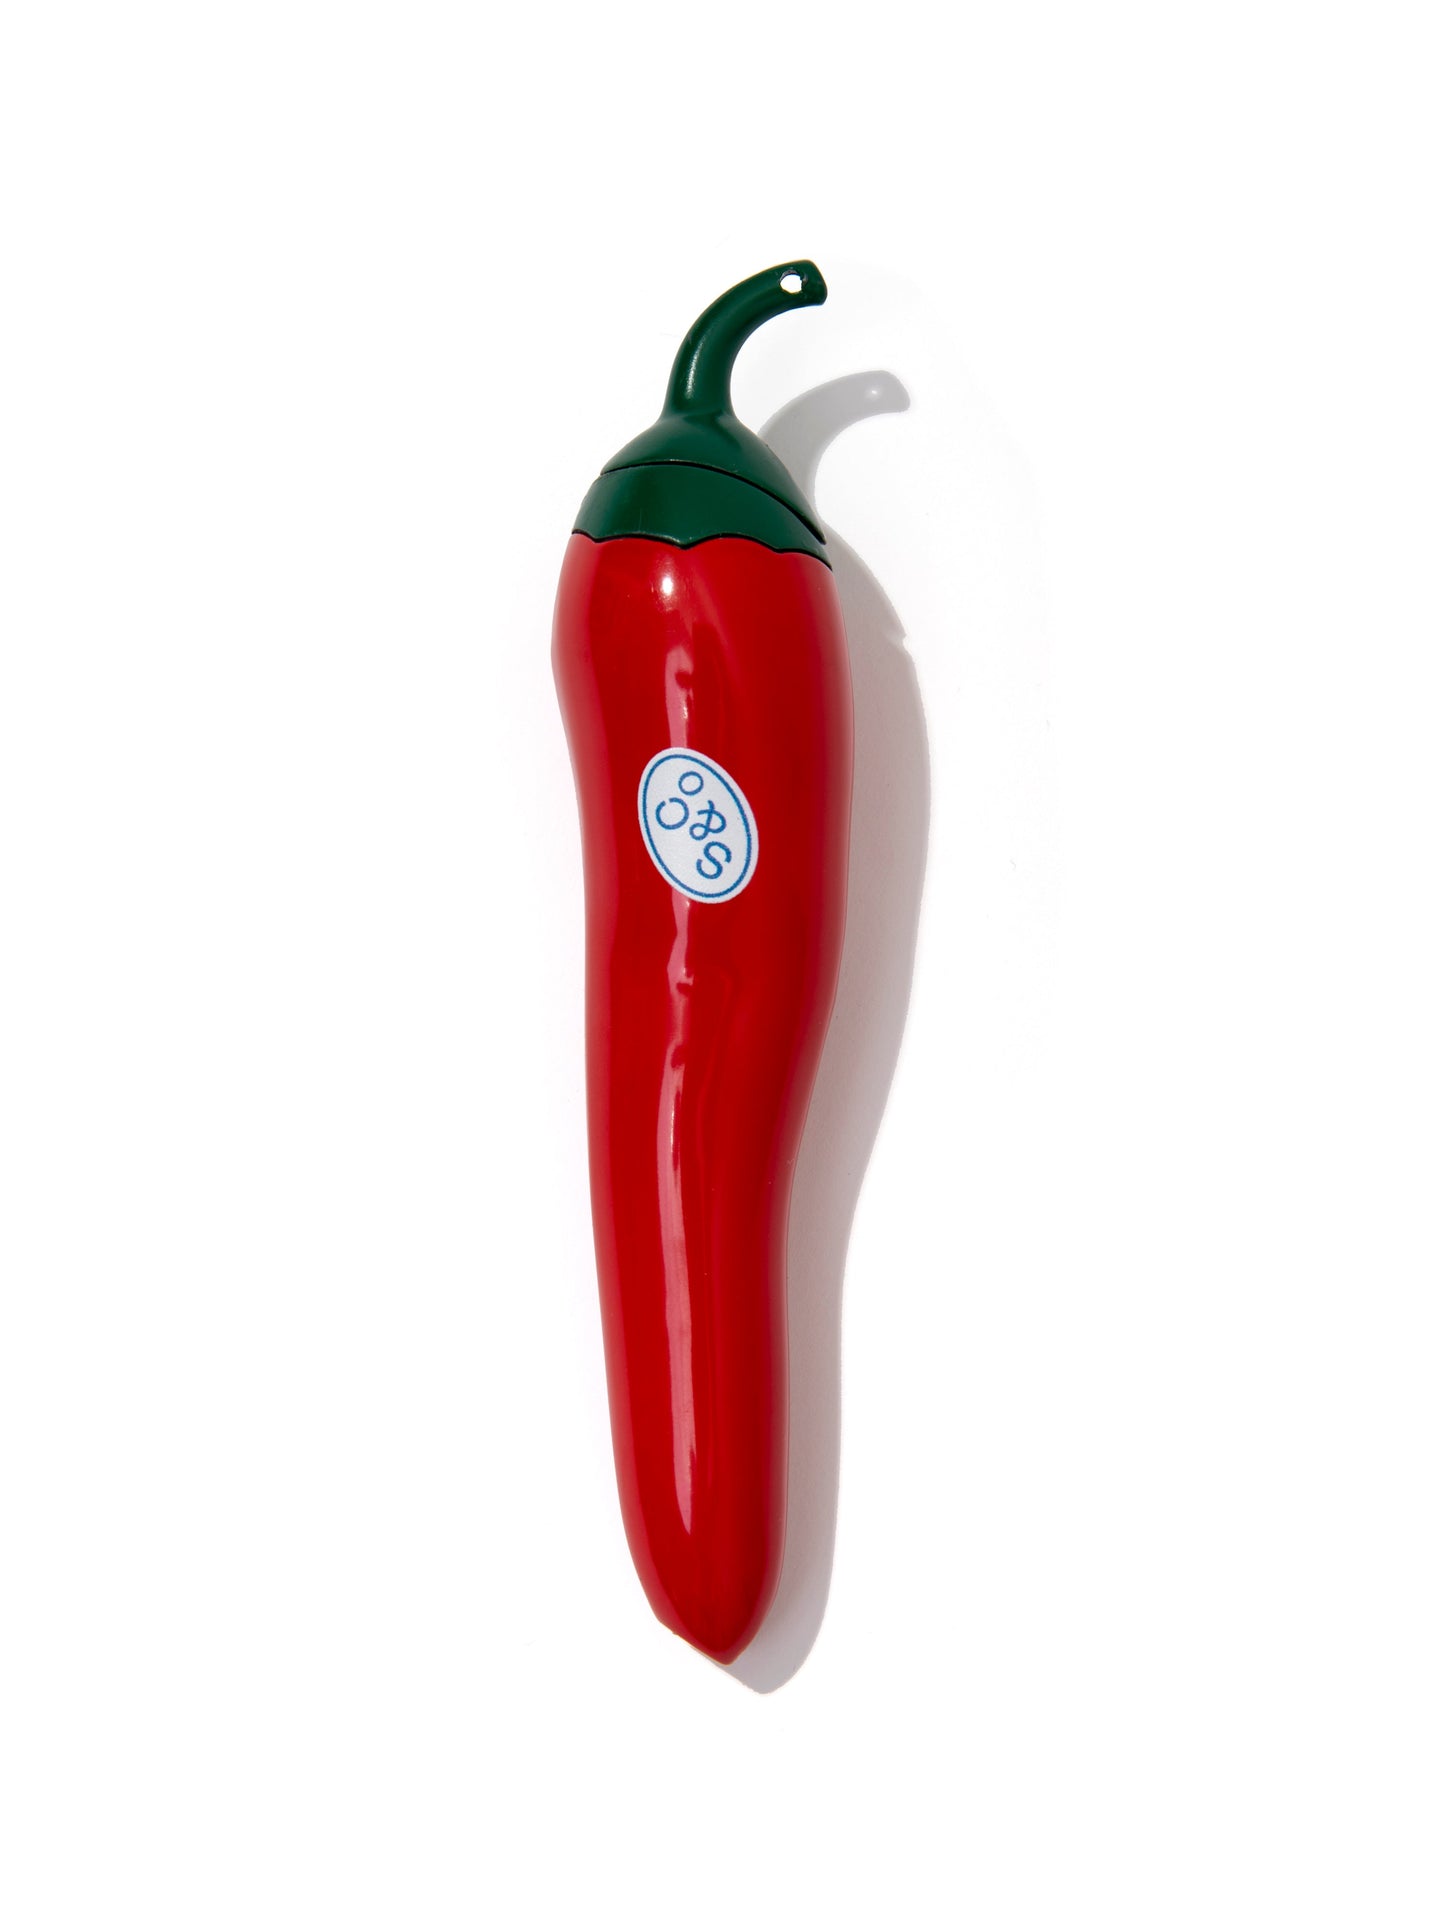 Carry Case + Chili Pepper Lighter - Sackville & Co.